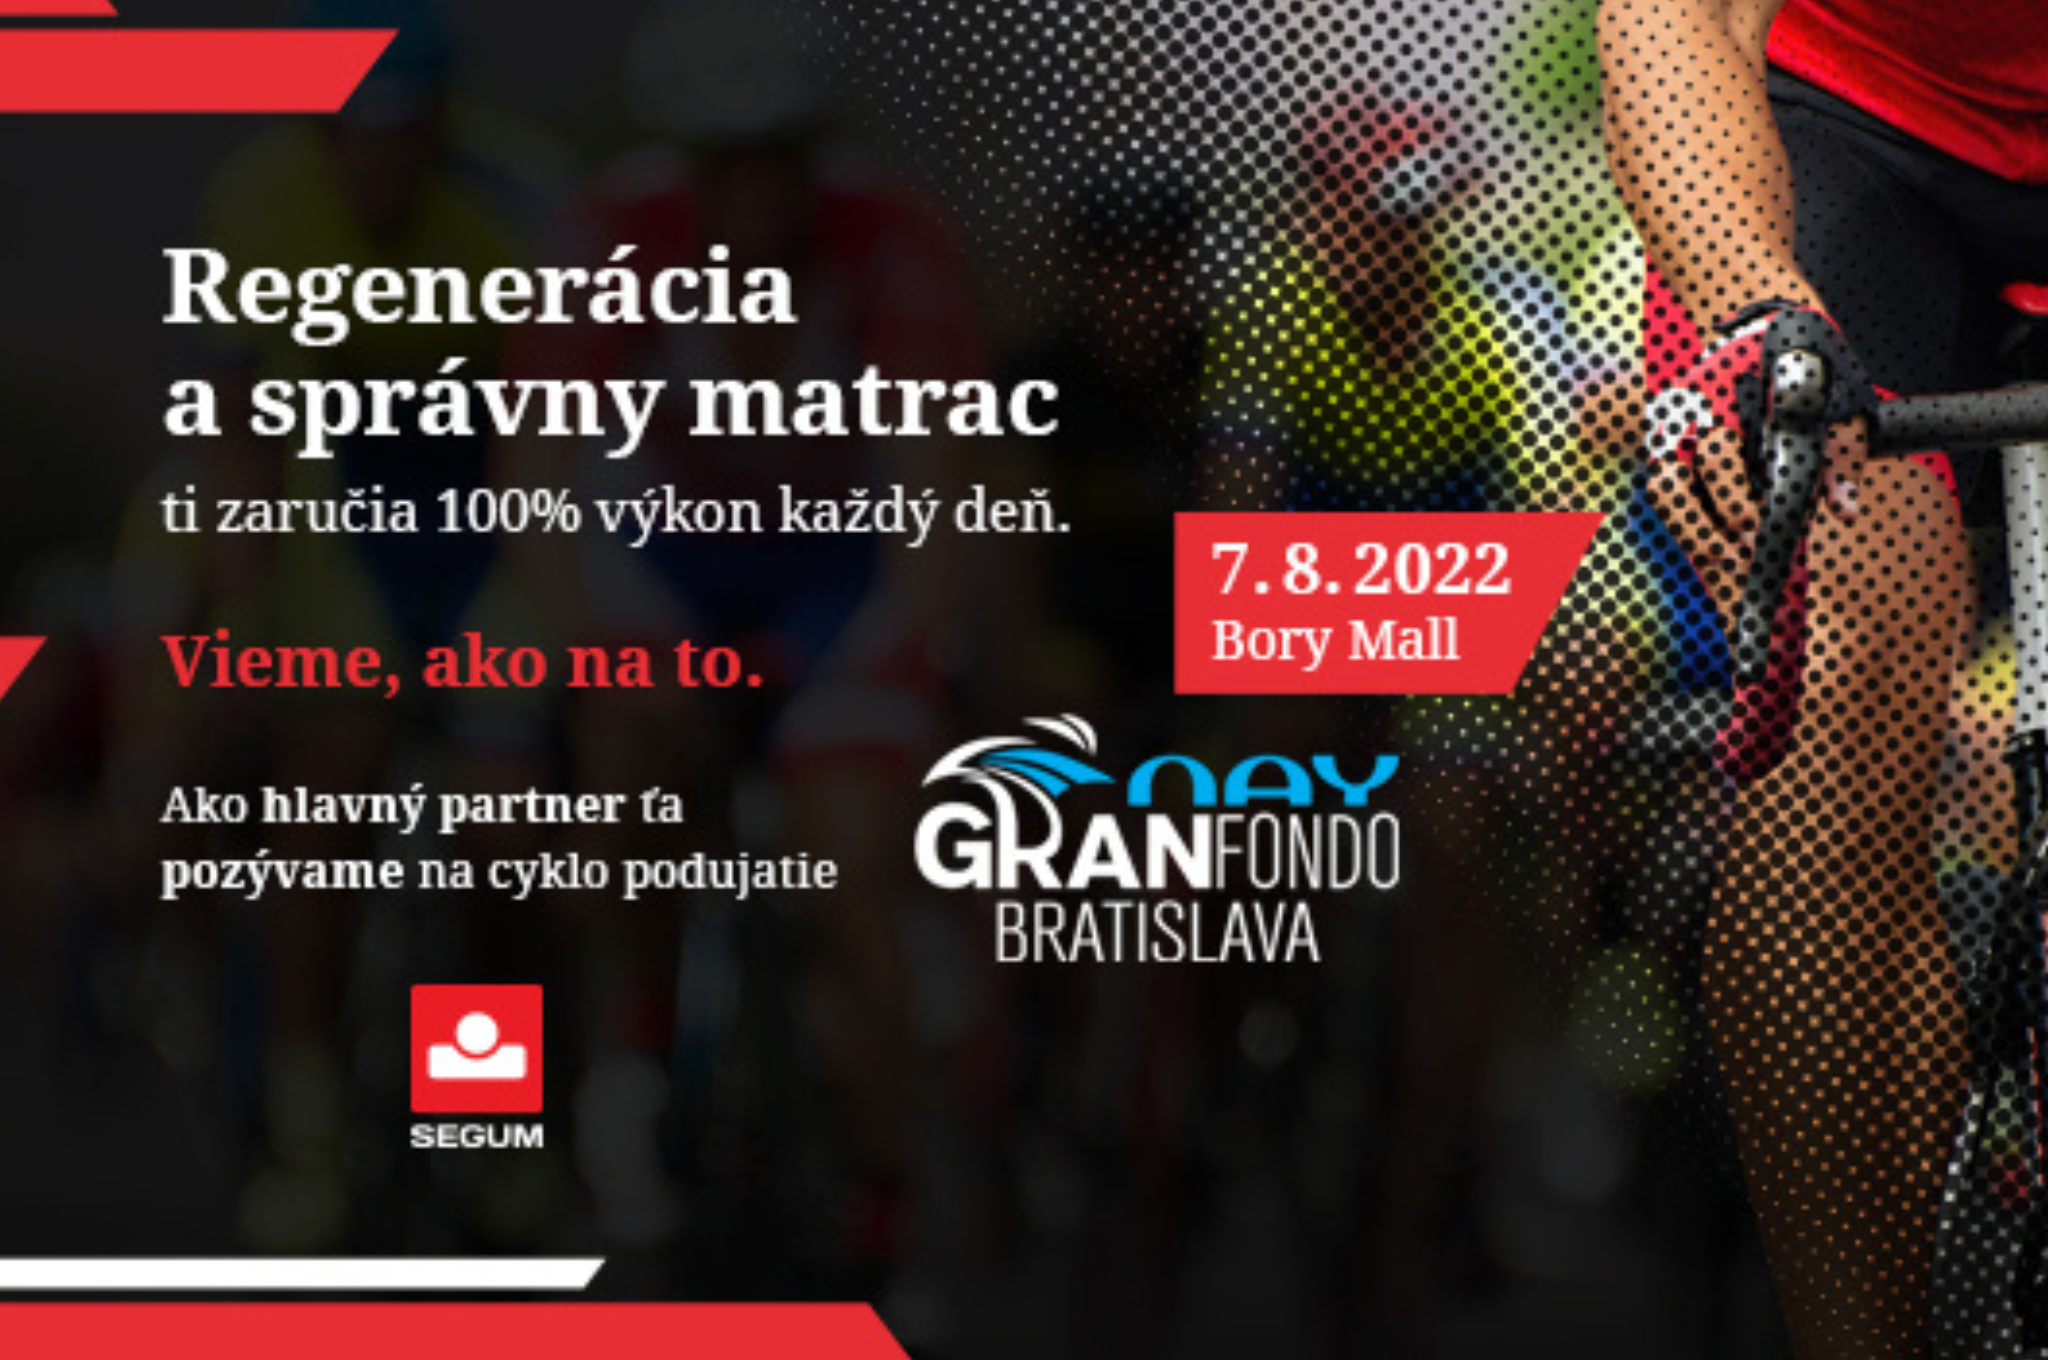 Segum na veľkolepom cyklo podujatí Nay Gran Fondo Bratislava 2022 